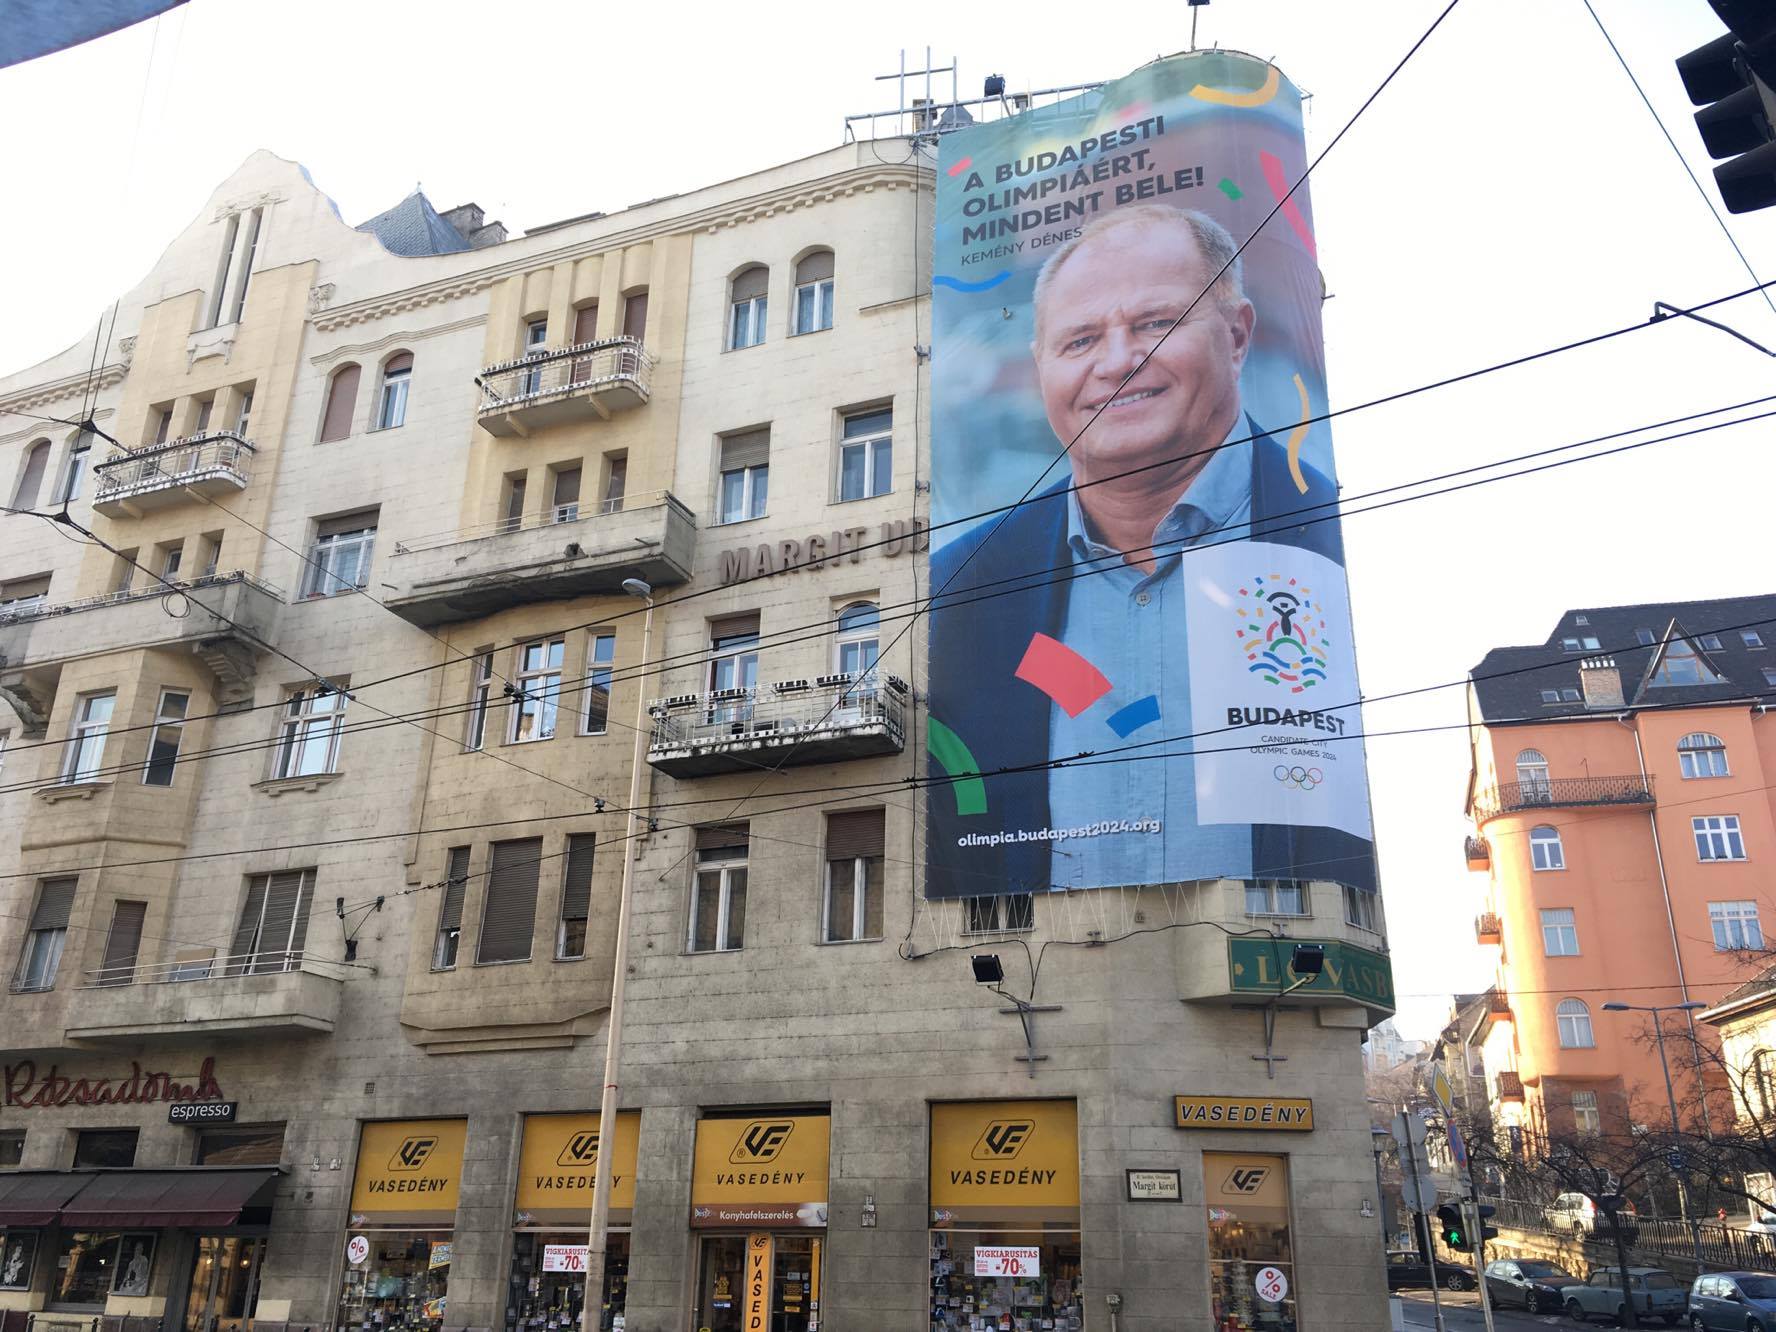 A budapesti olimpiát óriásplakáton hirdető Kemény Dénes szerint is tisztességes dolog lenne egy népszavazás az olimpiáról